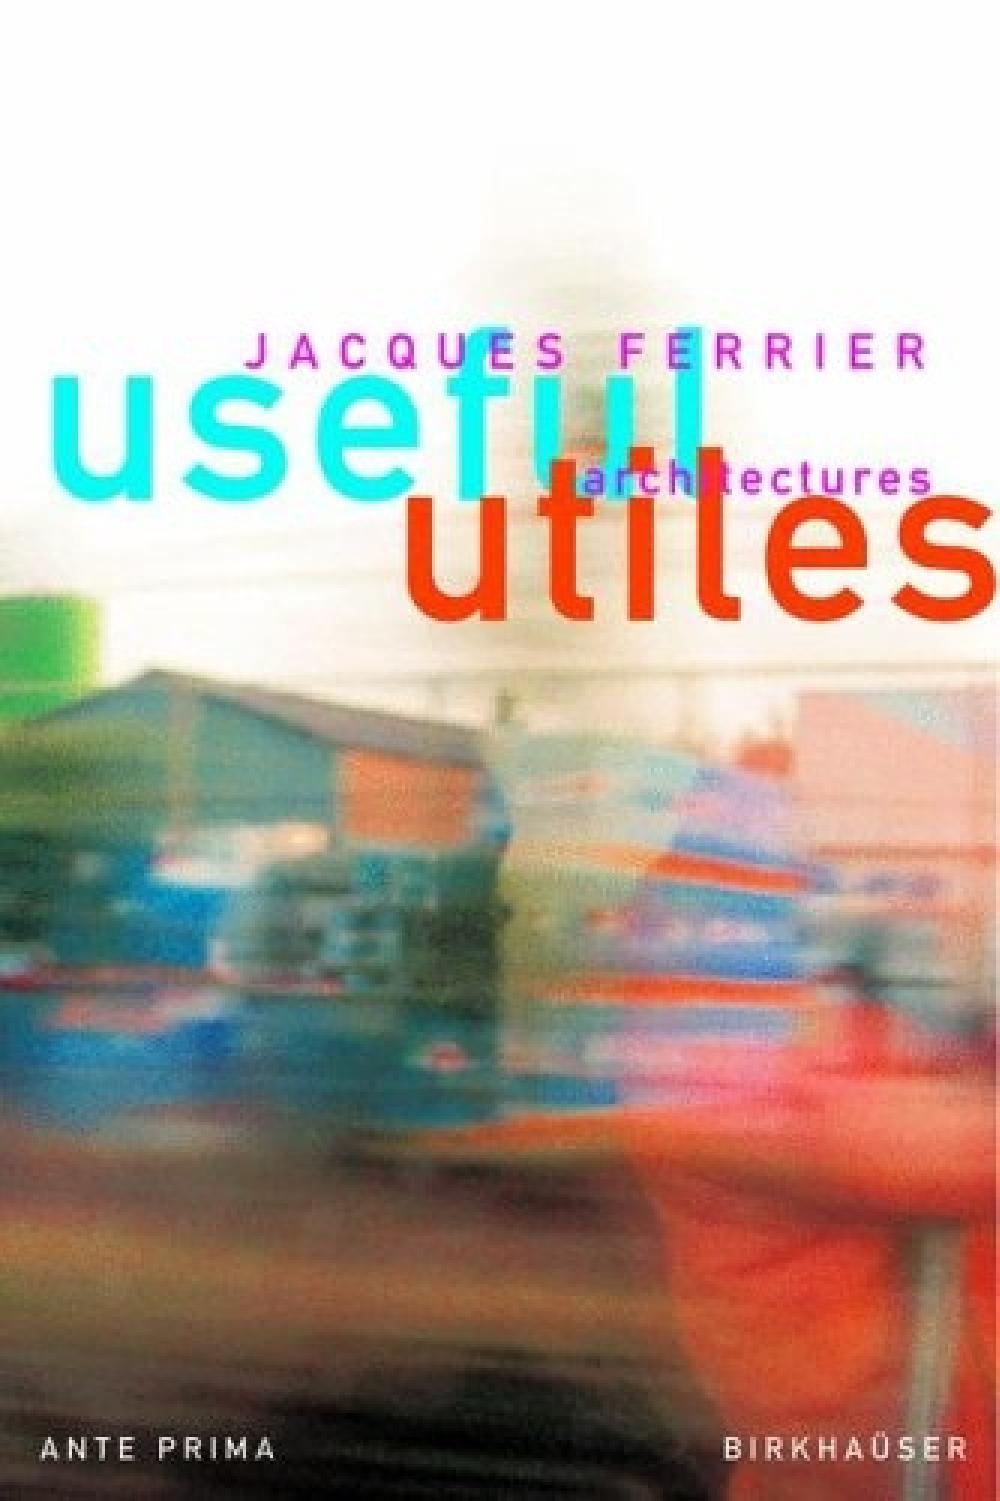 Utiles Jacques Ferrier